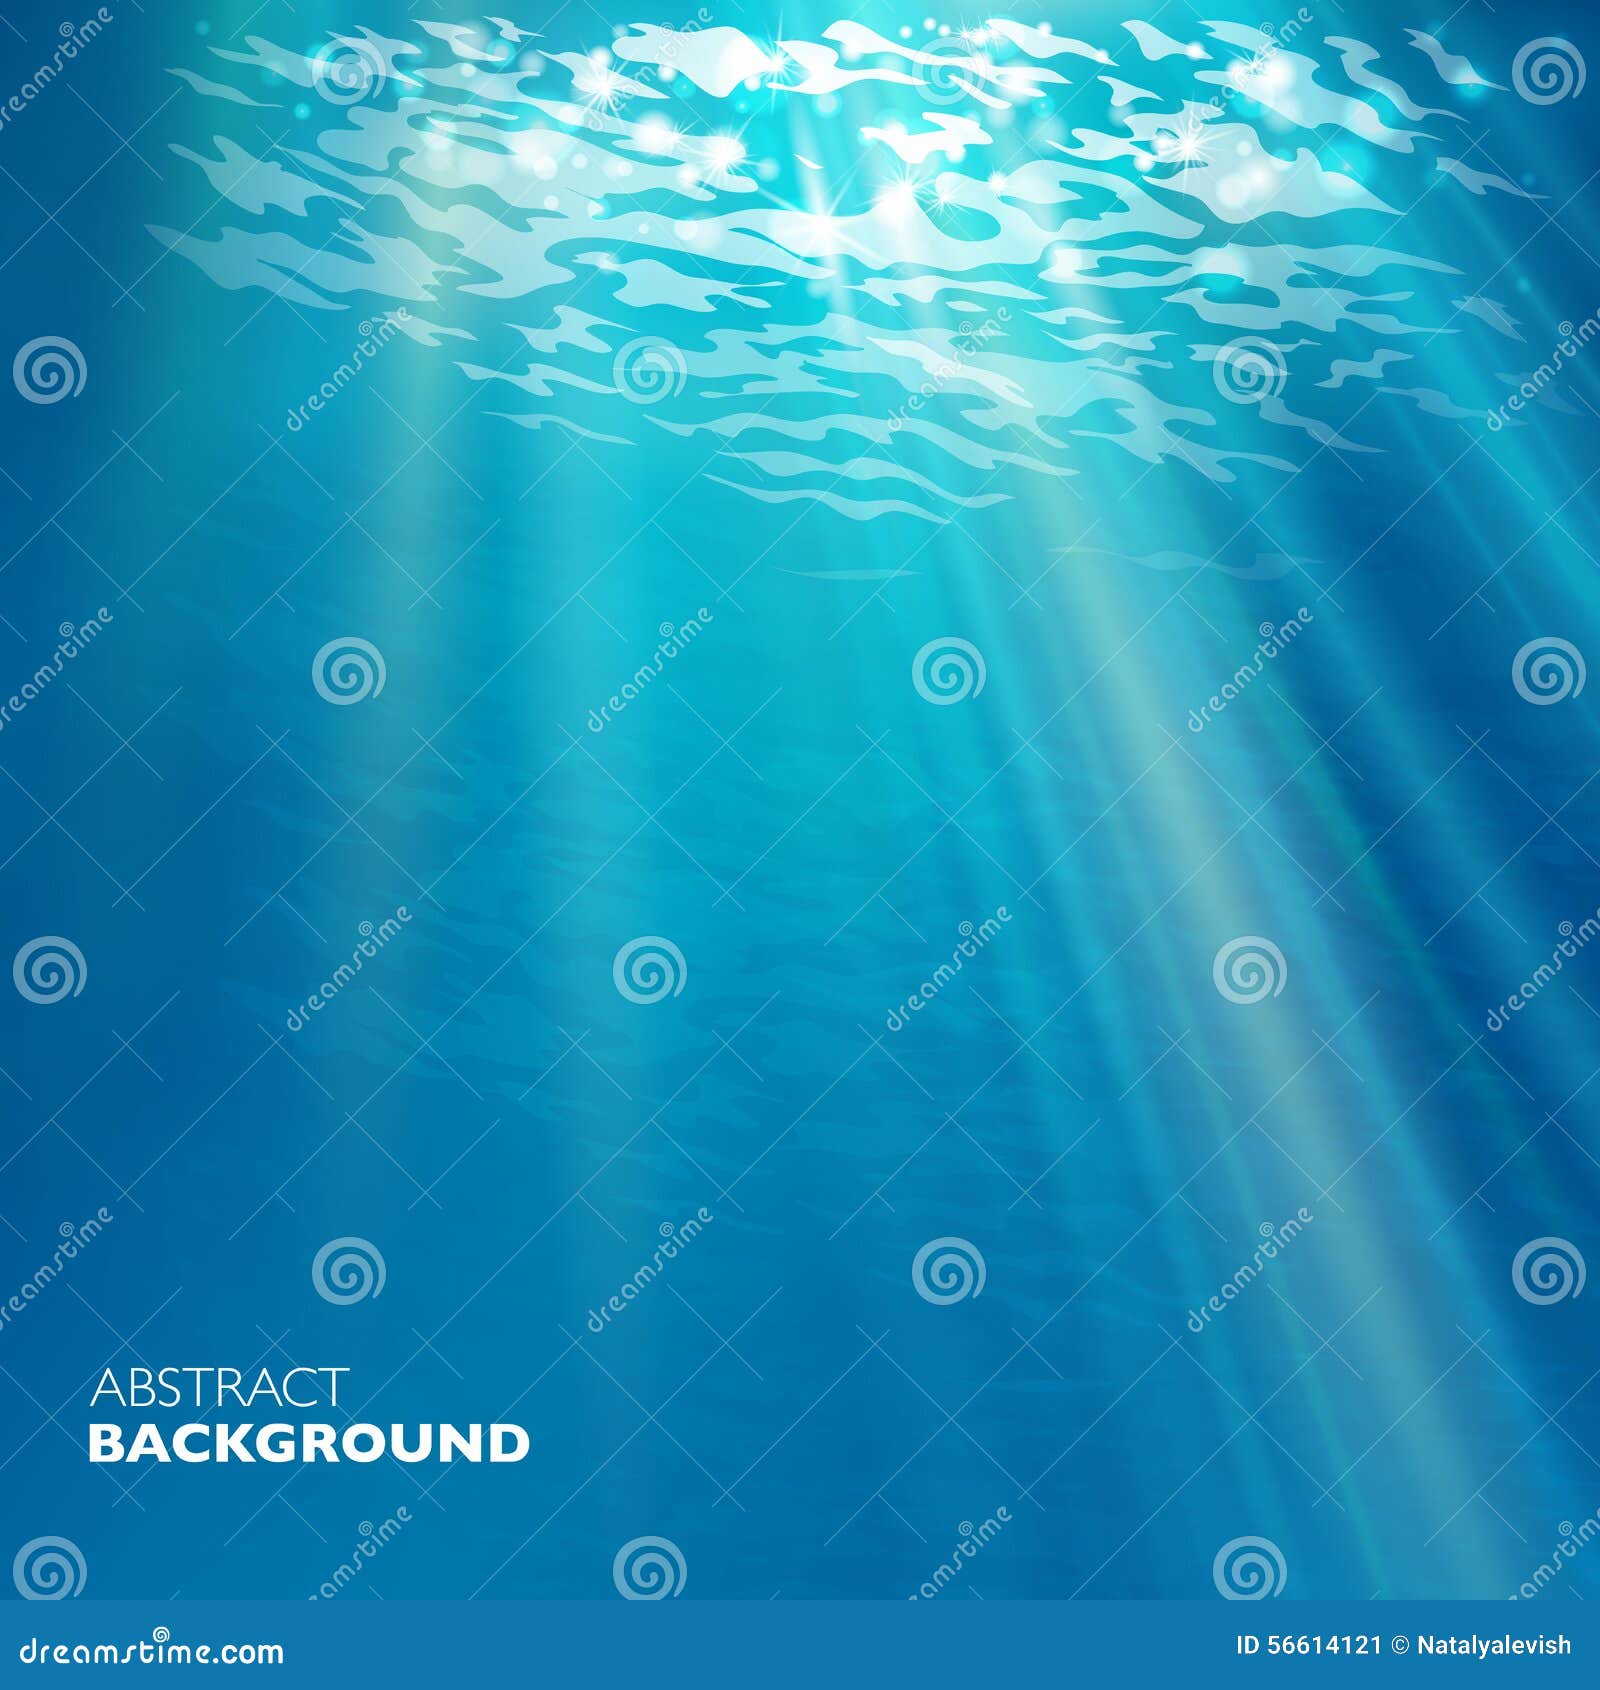  under water background